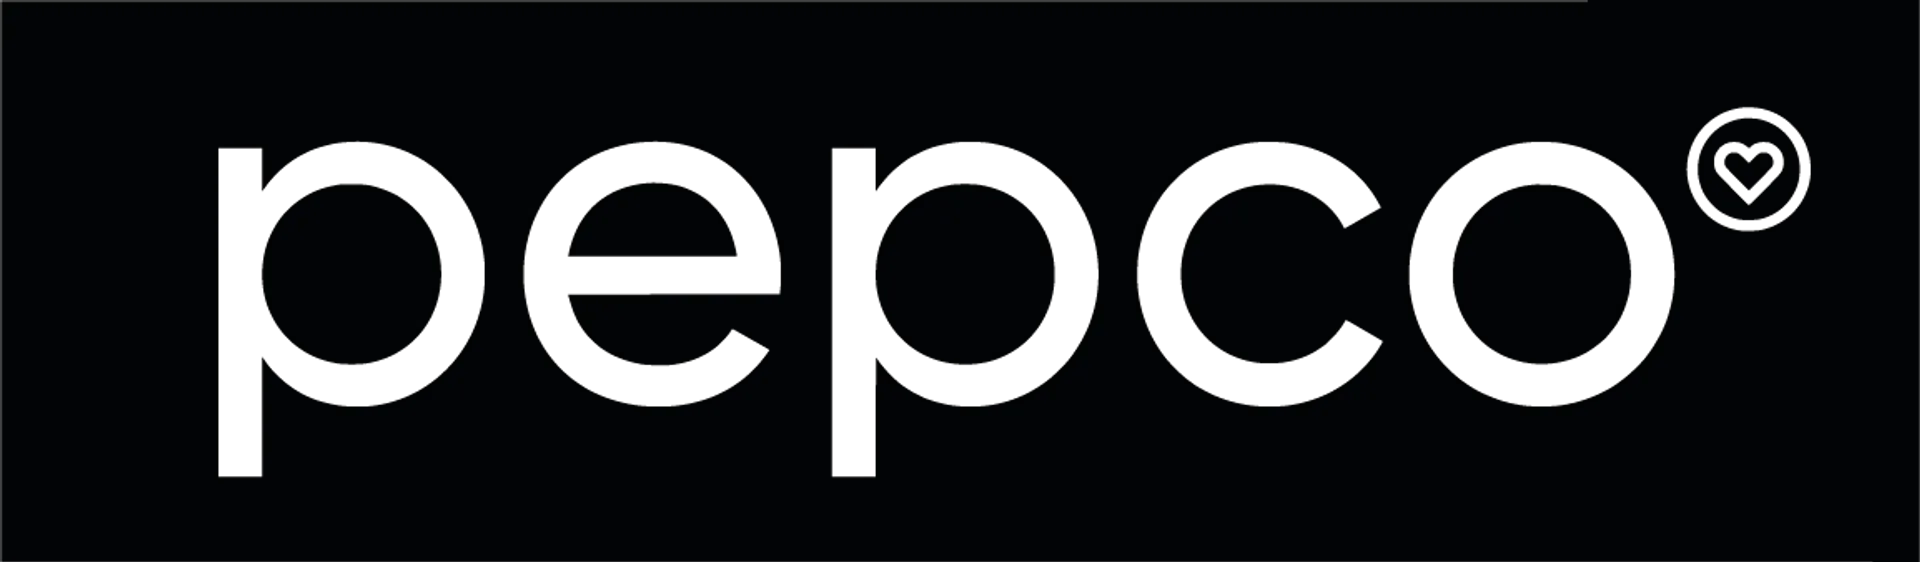 PEPCO logo